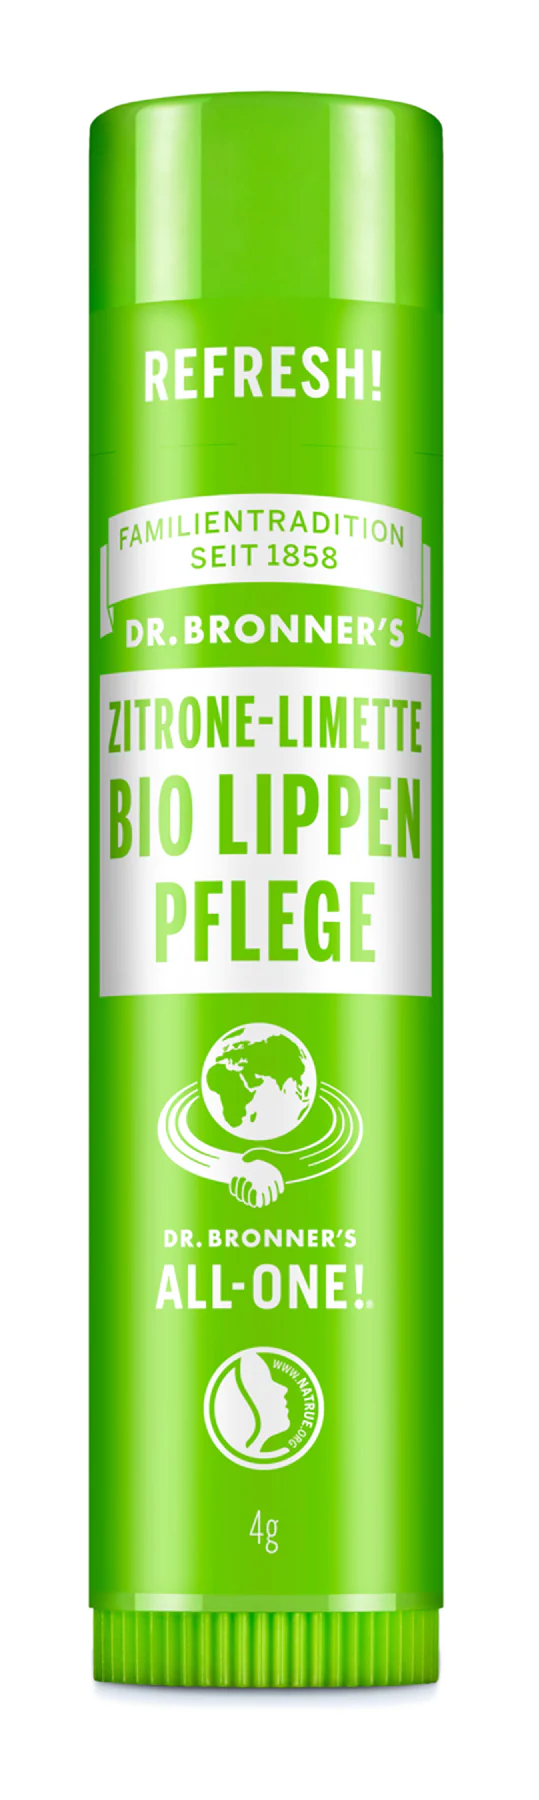 DR. BRONNER Lippenbalsam  Zitrone-Limette